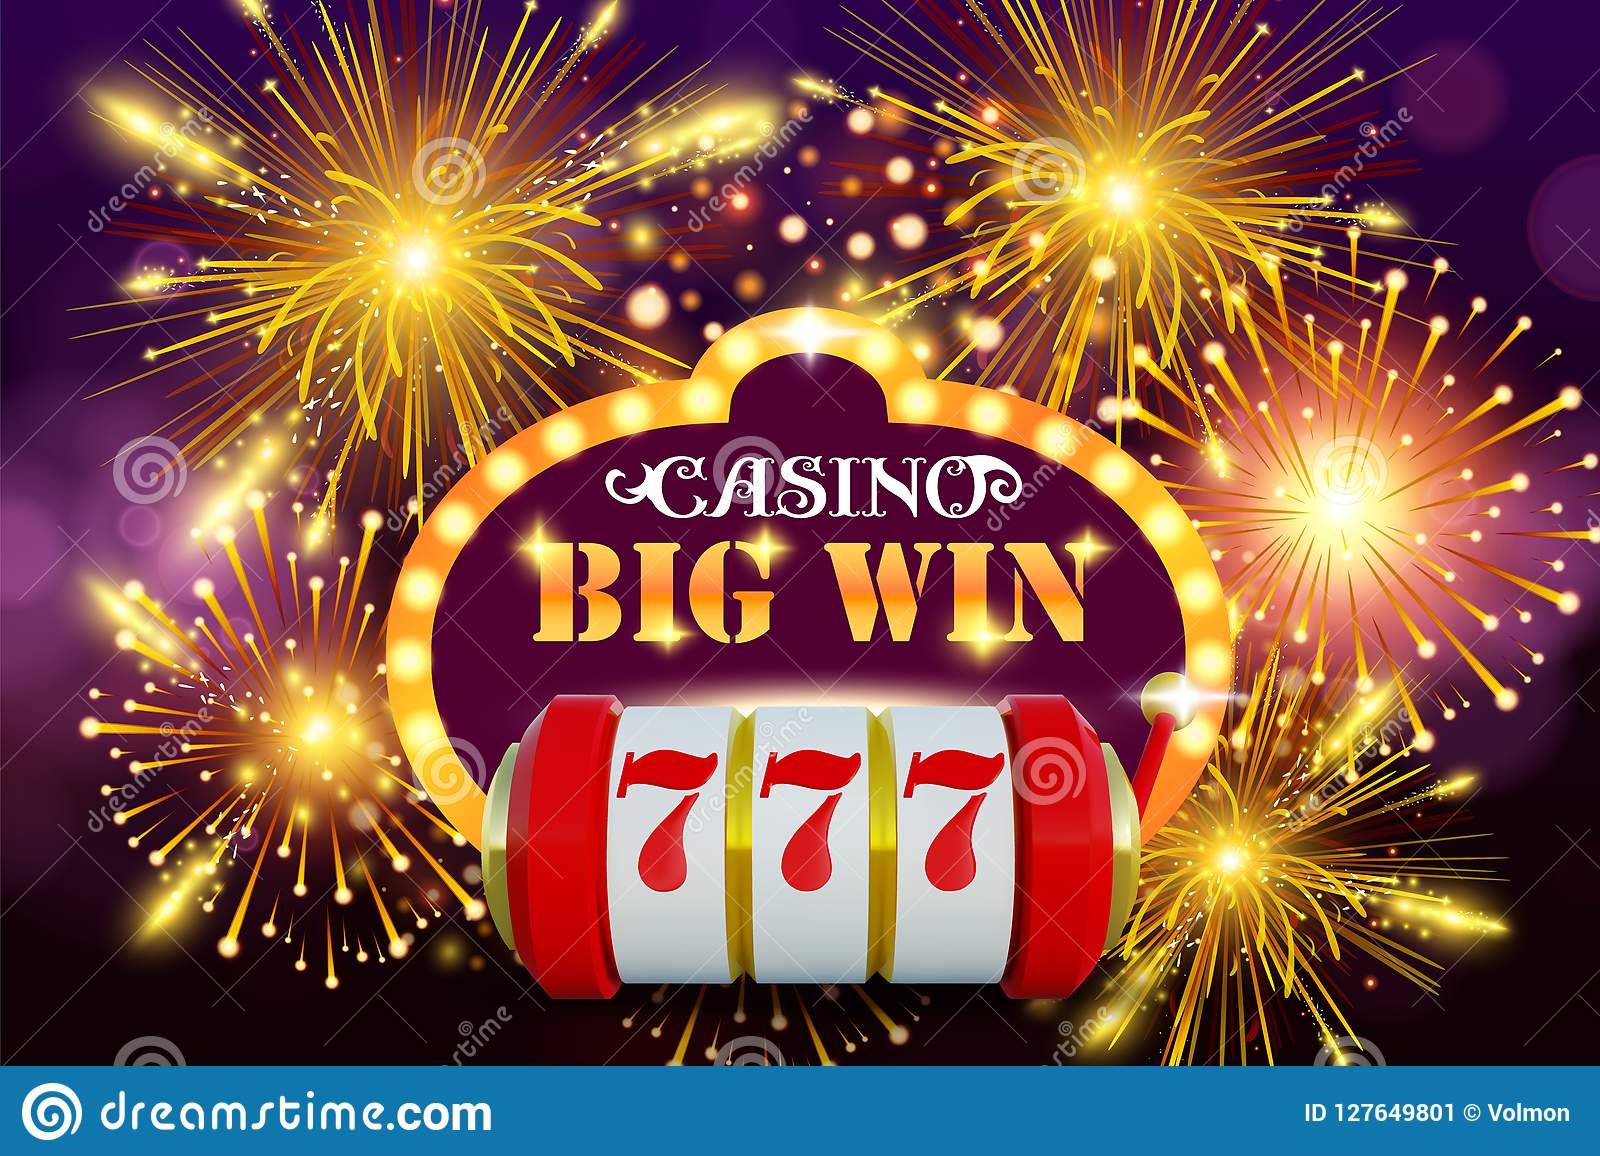 best deposit bonus online casino